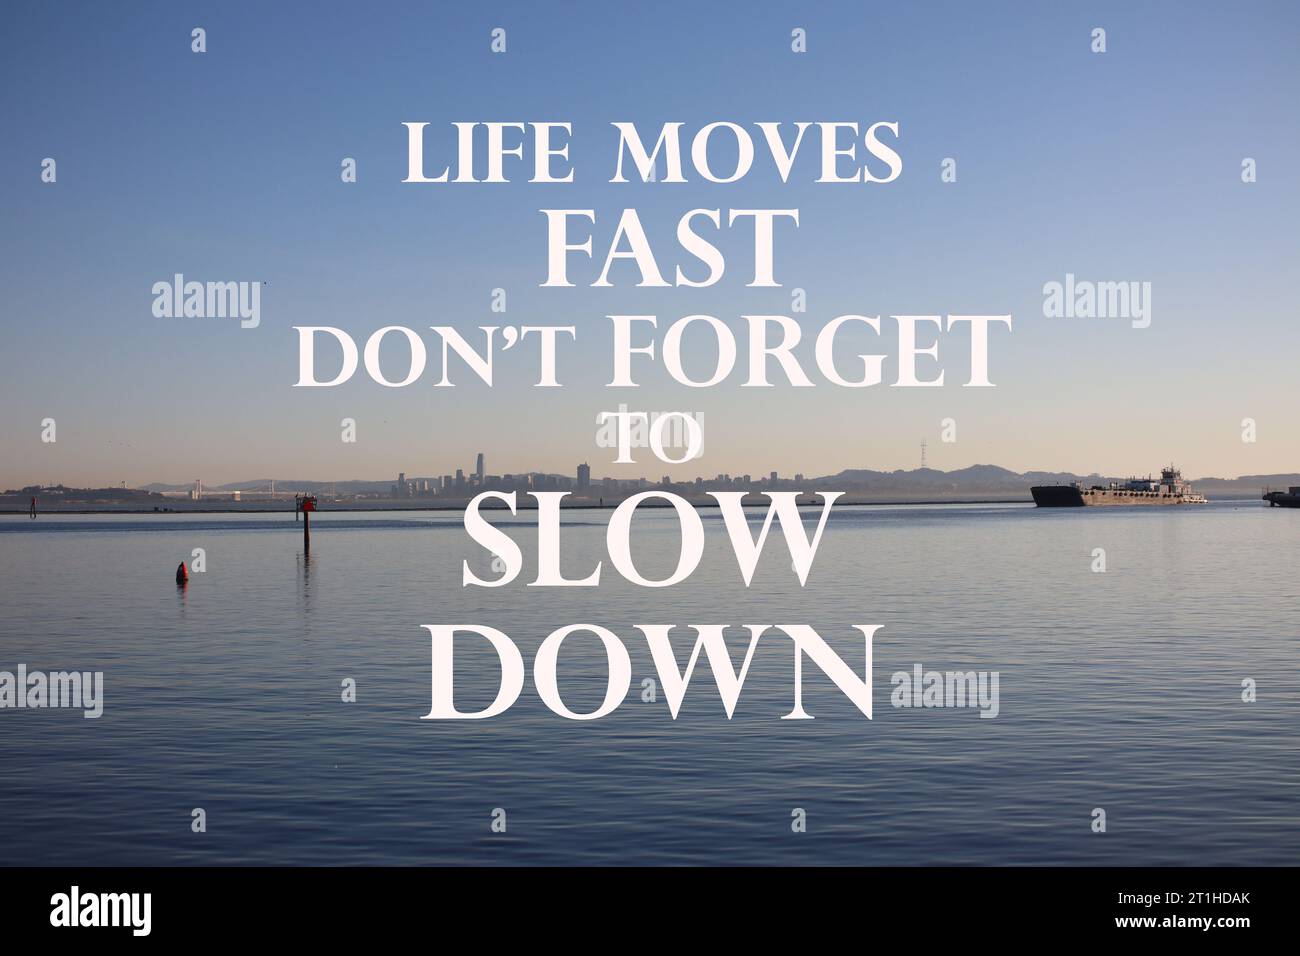 Zitat. Motivierende und inspirierende Zitate – das Leben bewegt sich schnell, vergessen Sie nicht, langsamer zu werden. Stockfoto